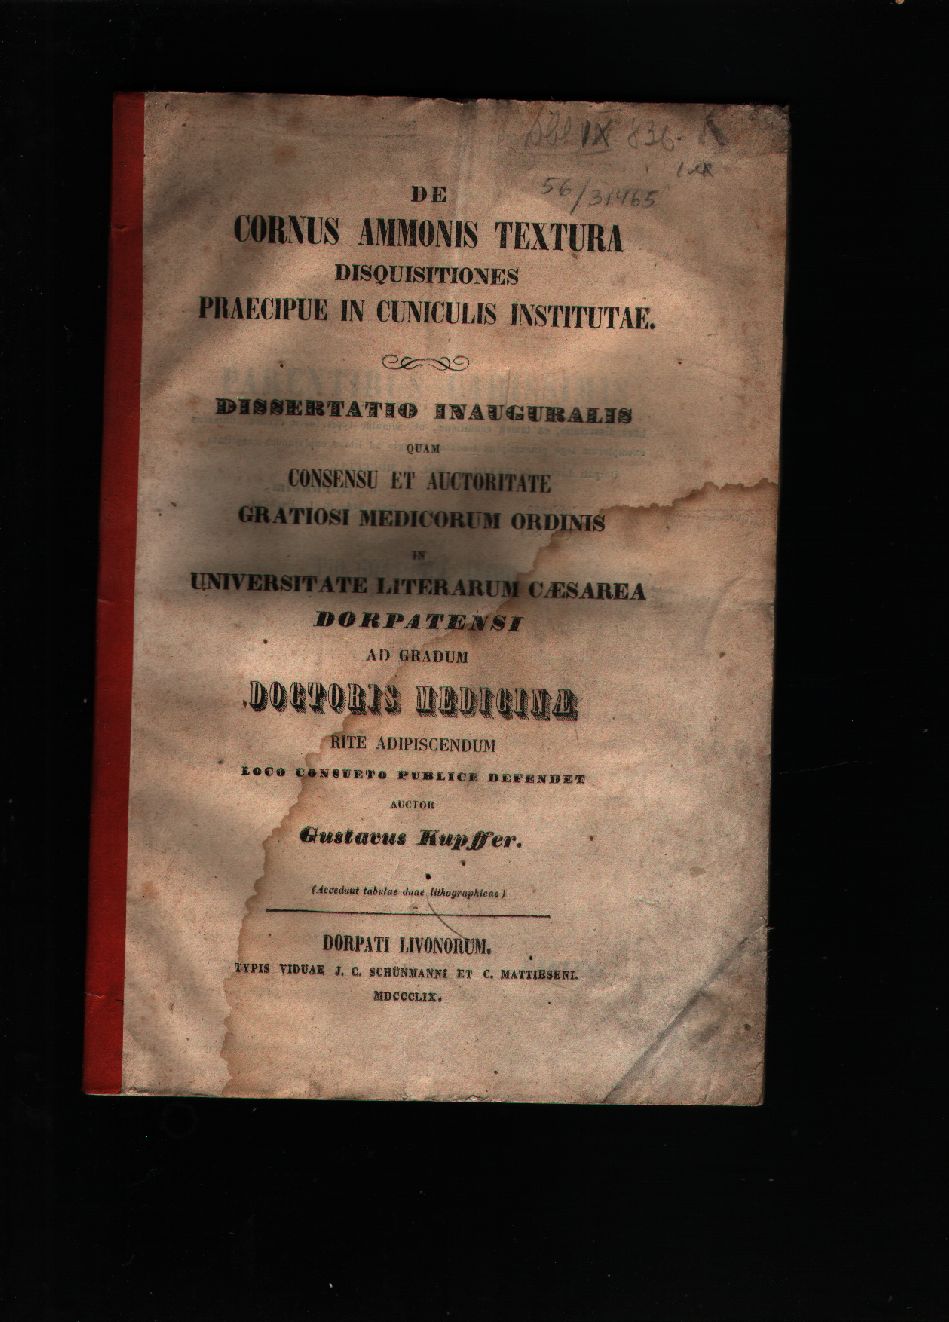 Gustavus Kupffer  De Cornus Ammonis Textura  Disquisitiones Praecipue in Cuniculis Institutae 